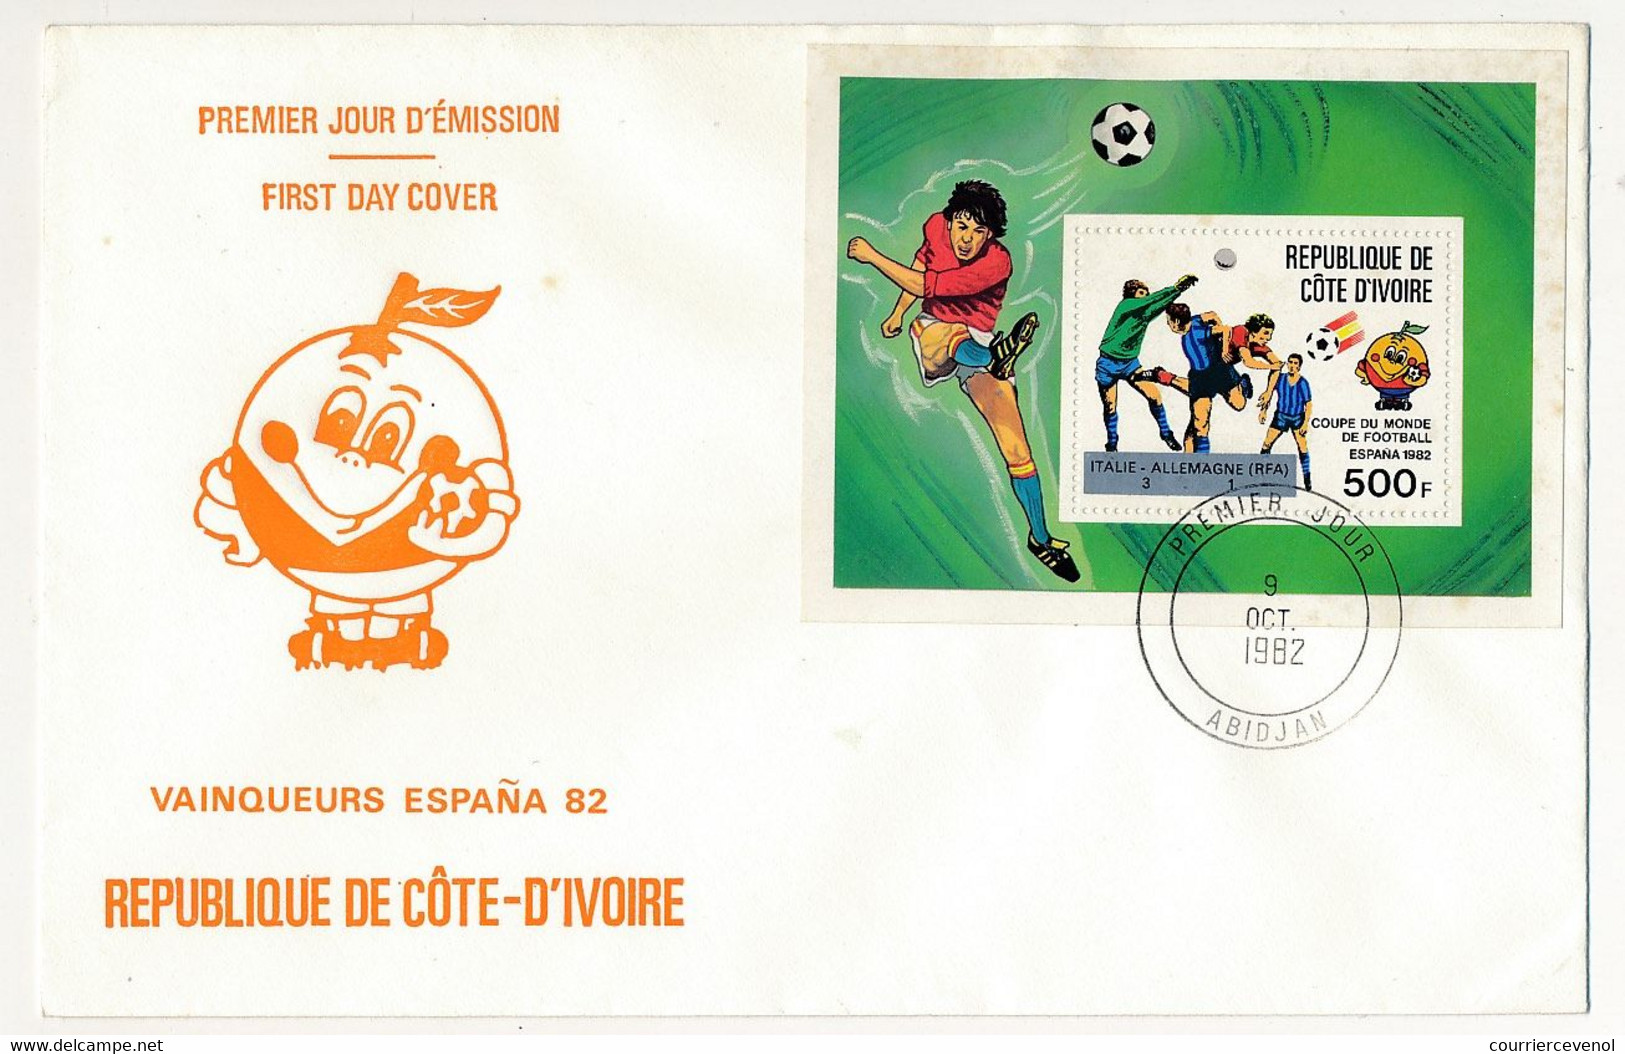 CÔTE D'IVOIRE - 4 Env FDC - 5 Val Coupe Du Monde De Football 1982 Espagne + BF Id. 19 Sept 1981 - Abidjan - Côte D'Ivoire (1960-...)